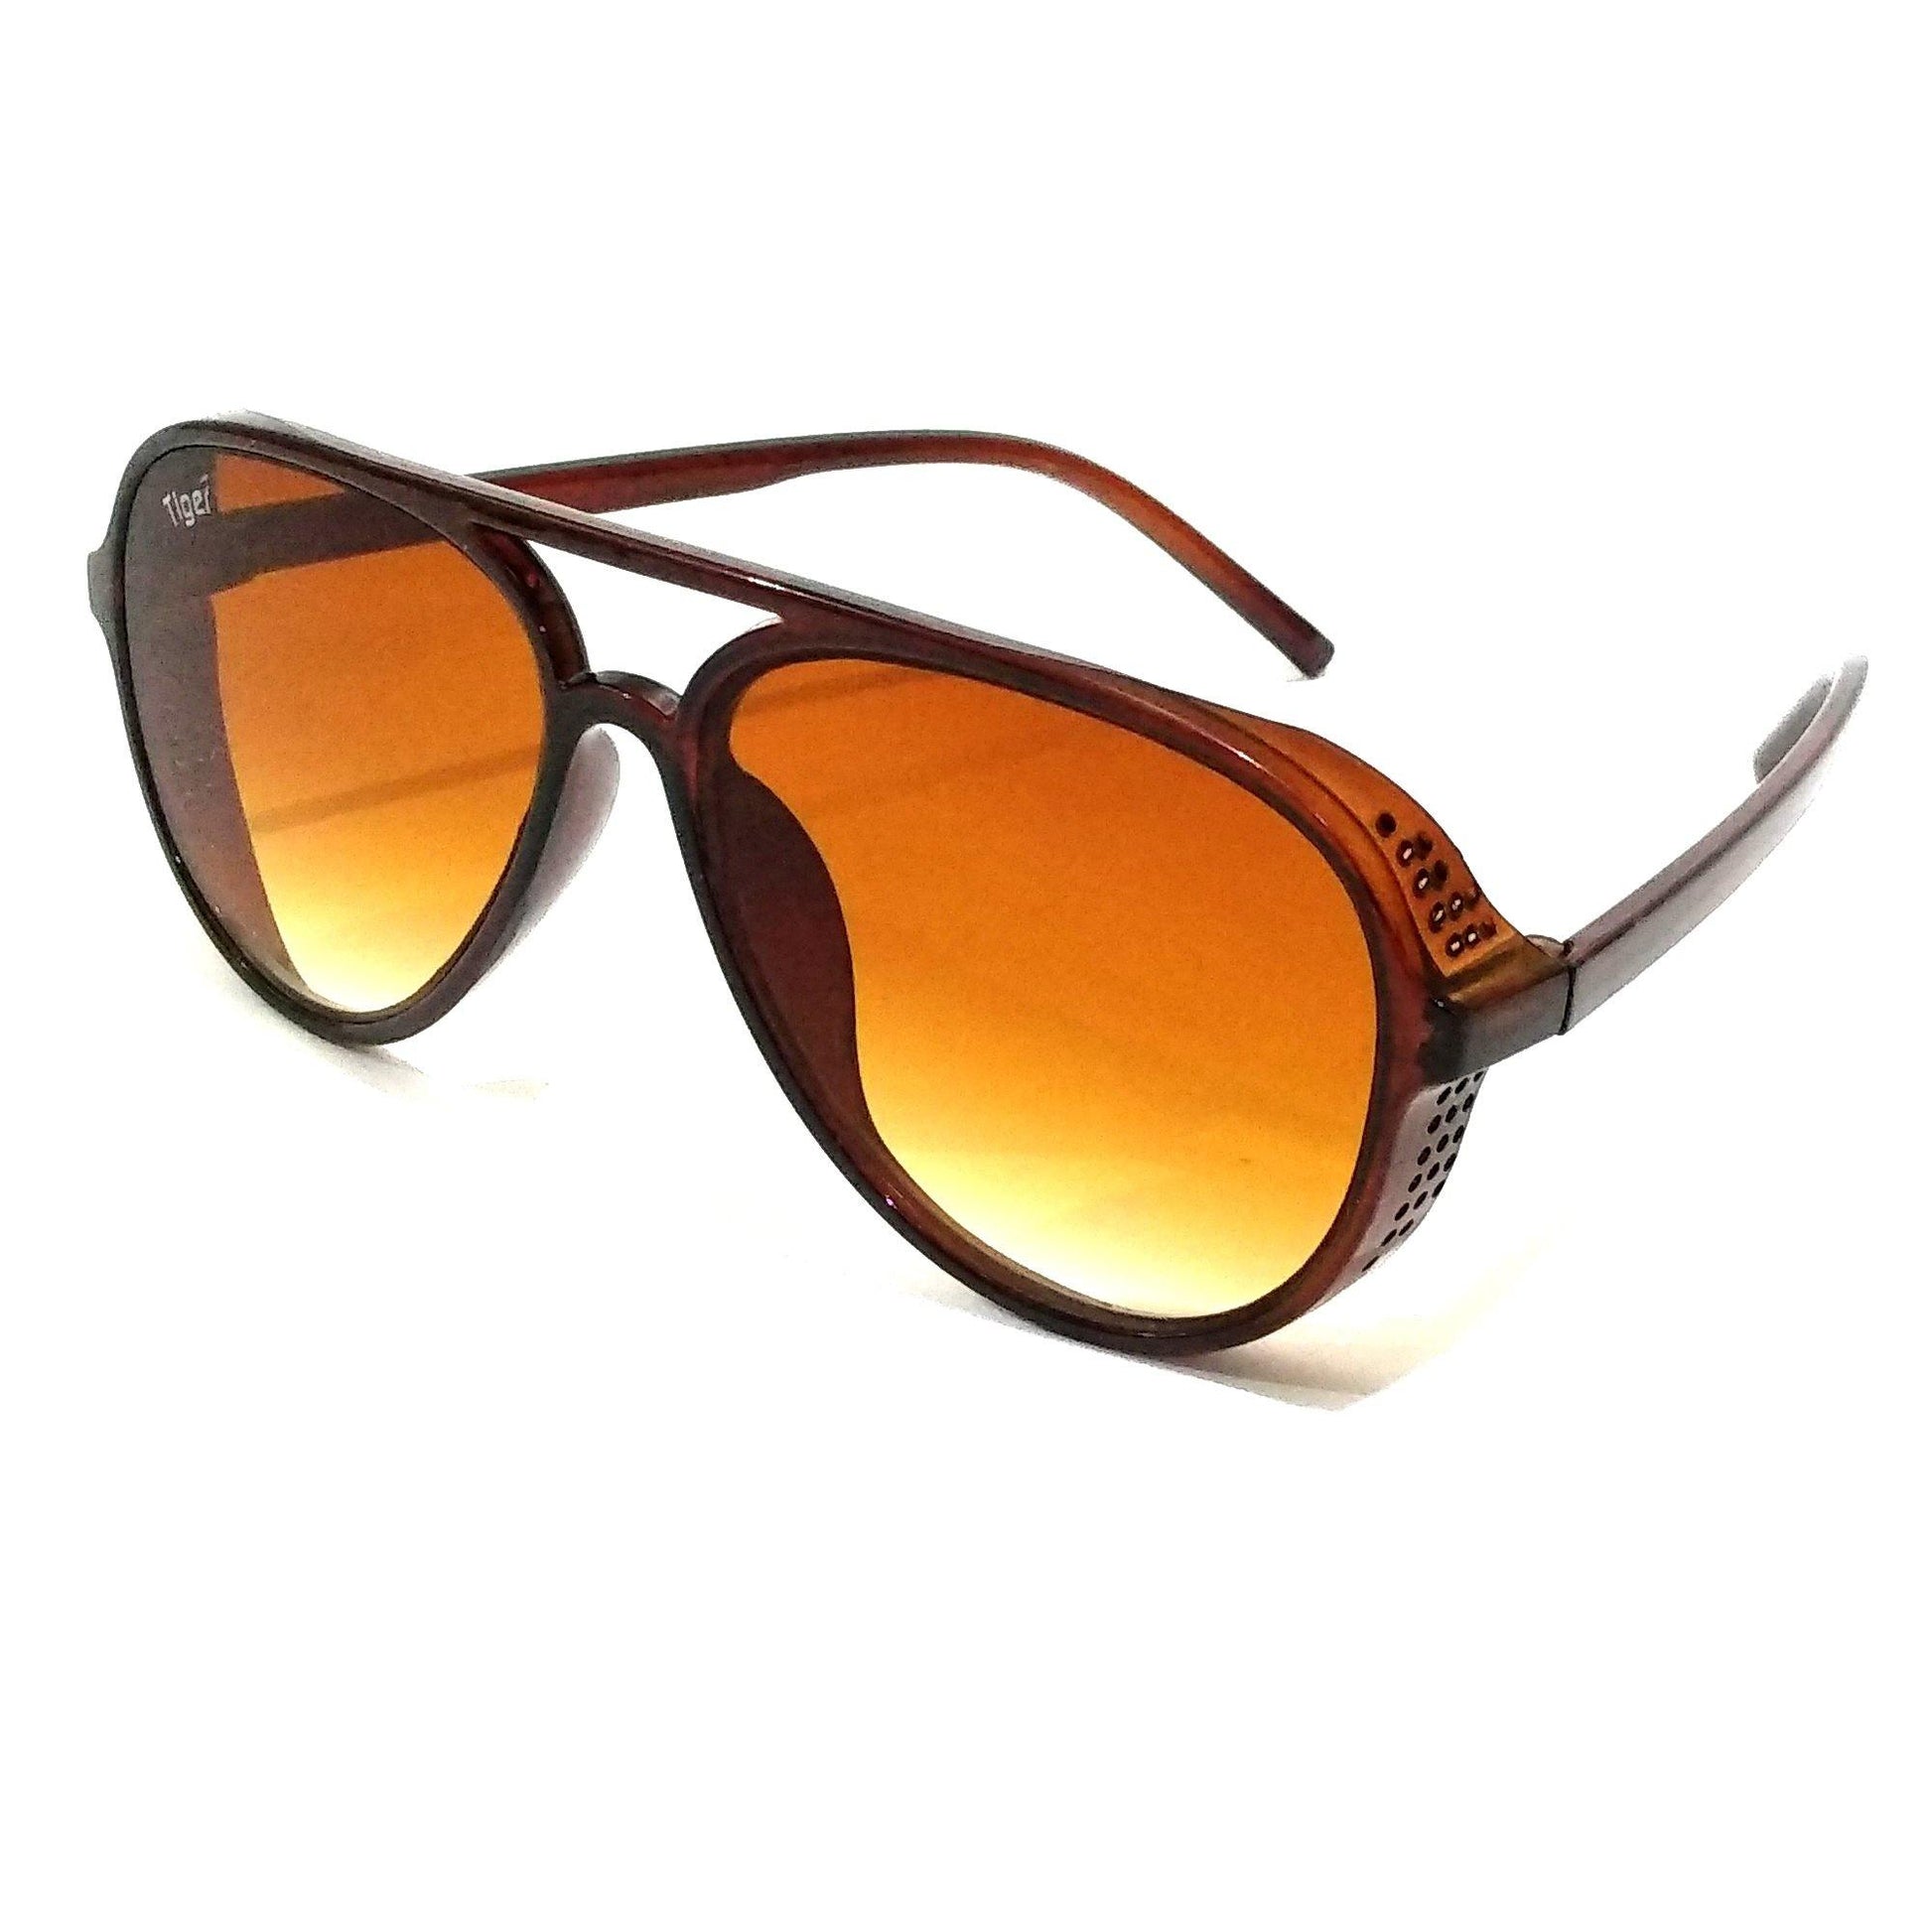 Aviator - Buy Aviator Sunglasses Online in India